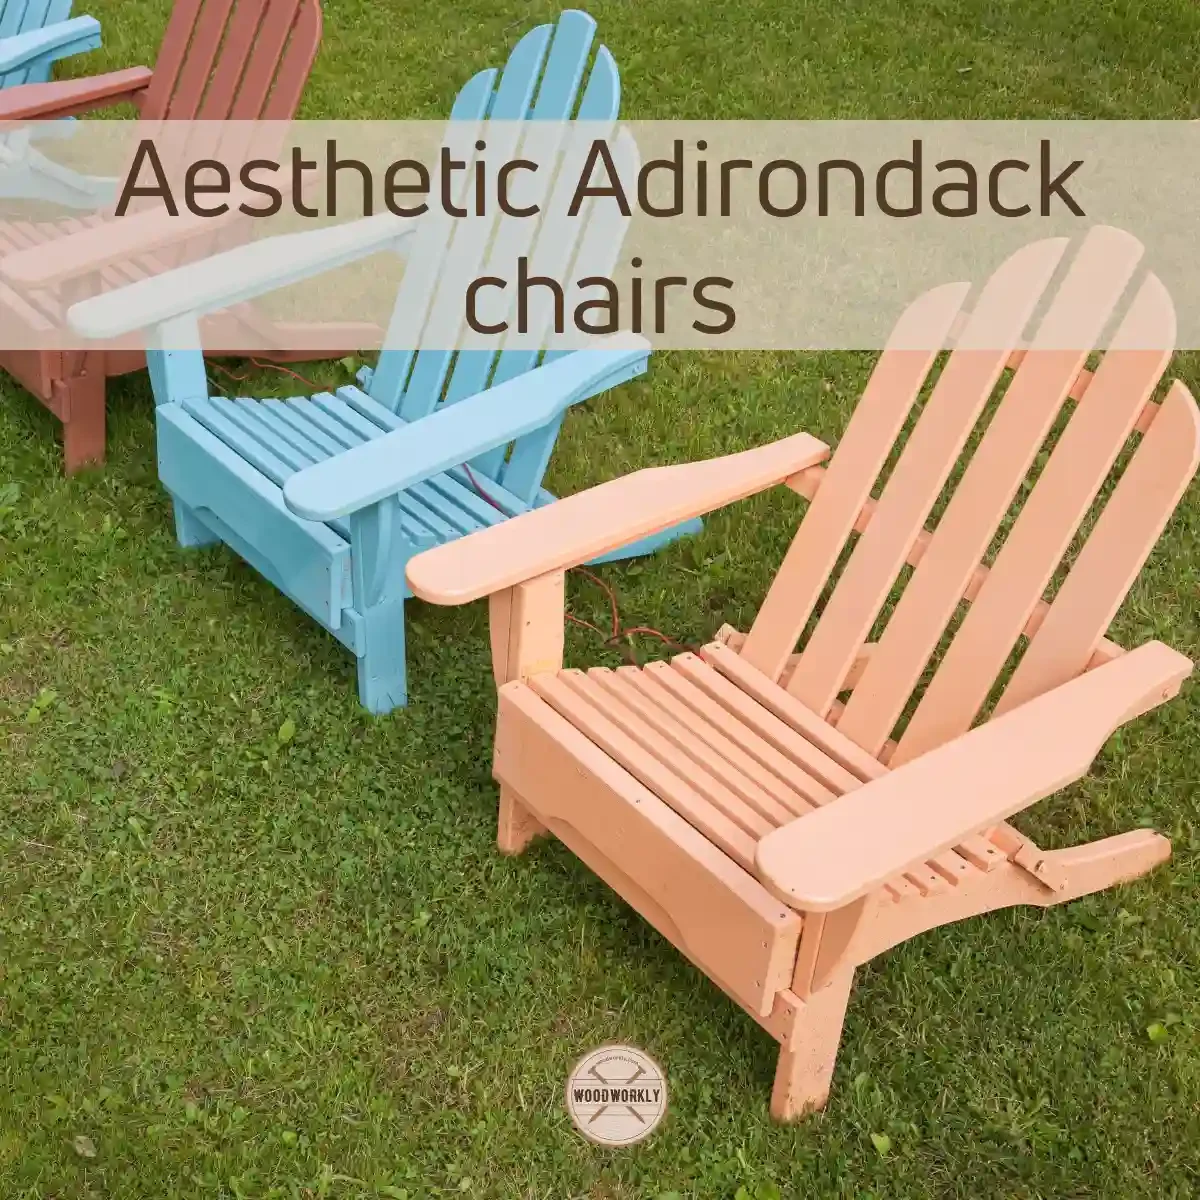 Aesthetic Adirondack chairs